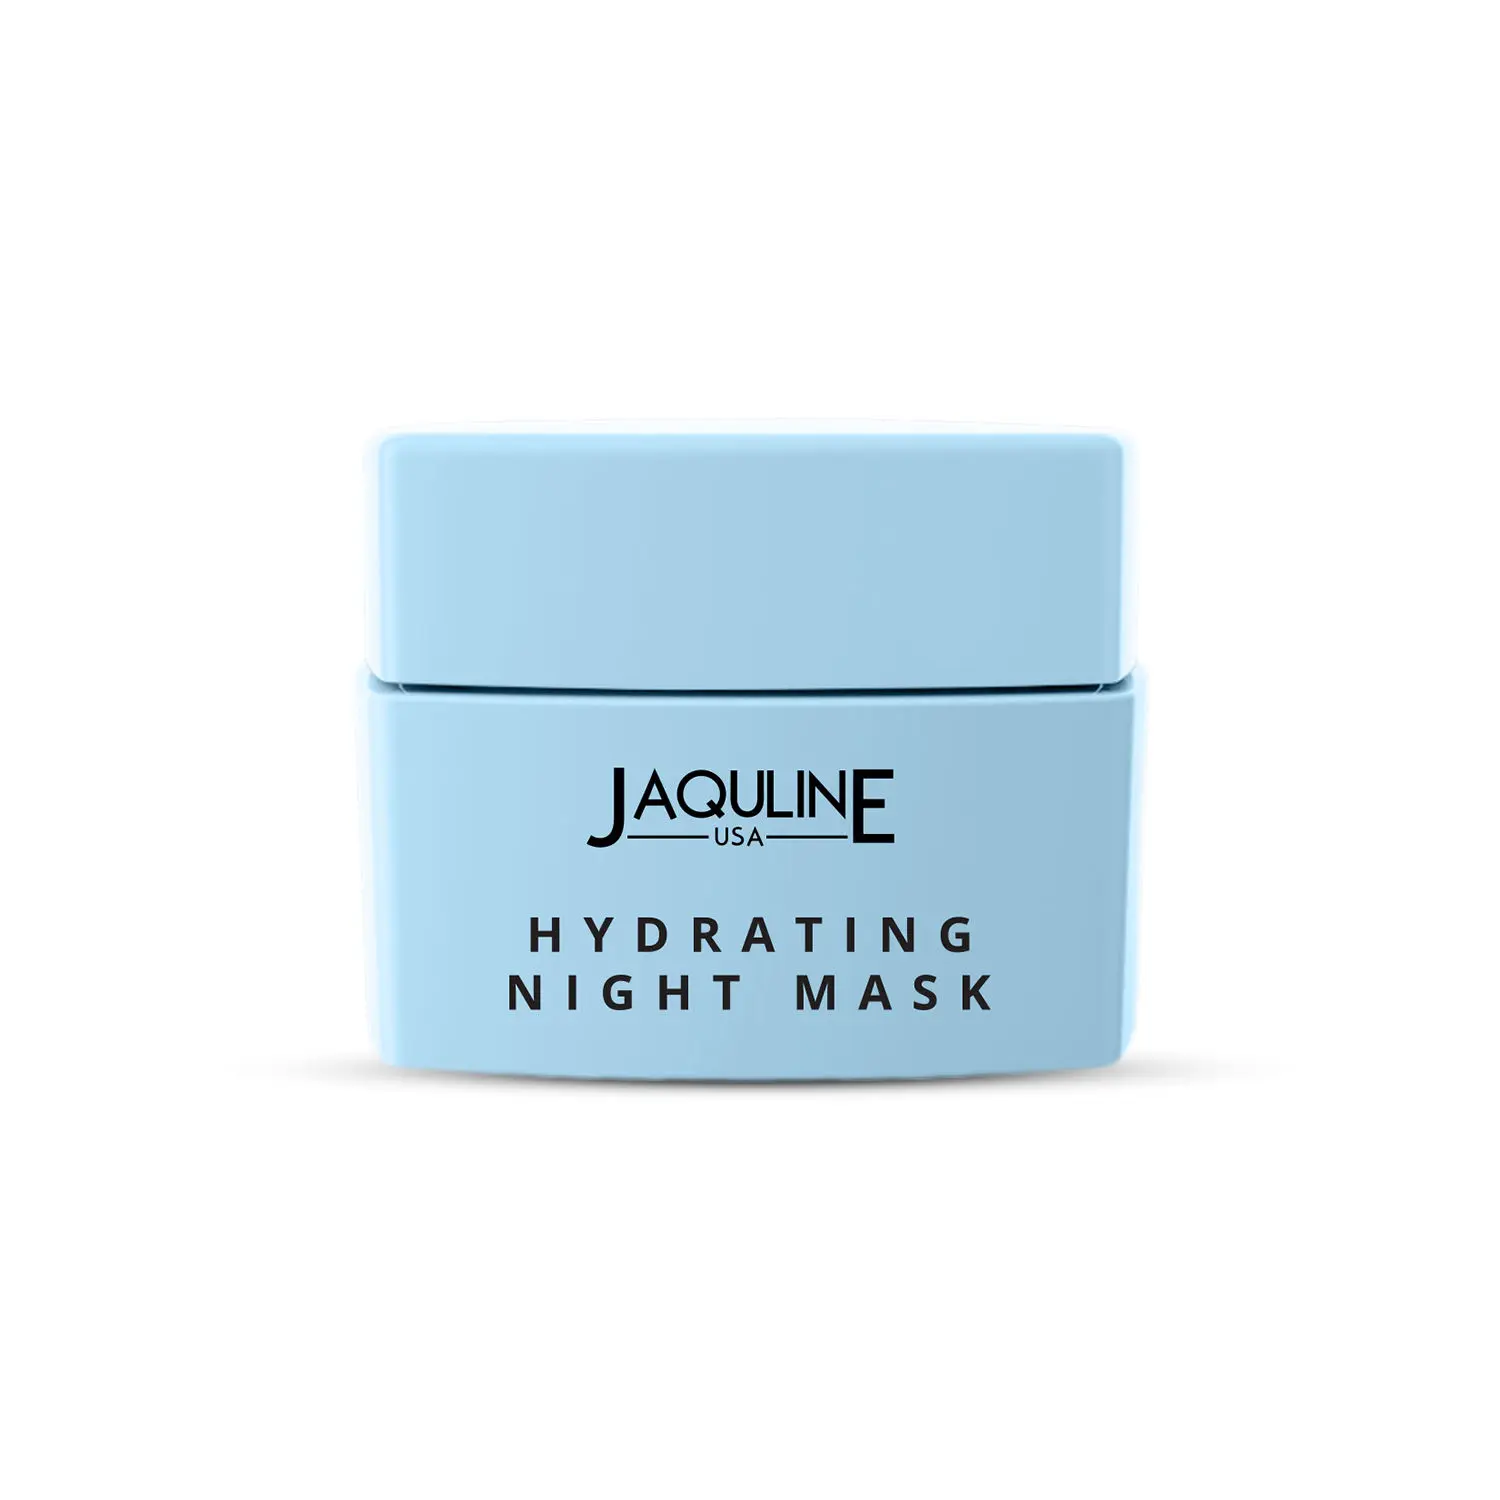 Jaquline USA Hydrating Night Mask 50g